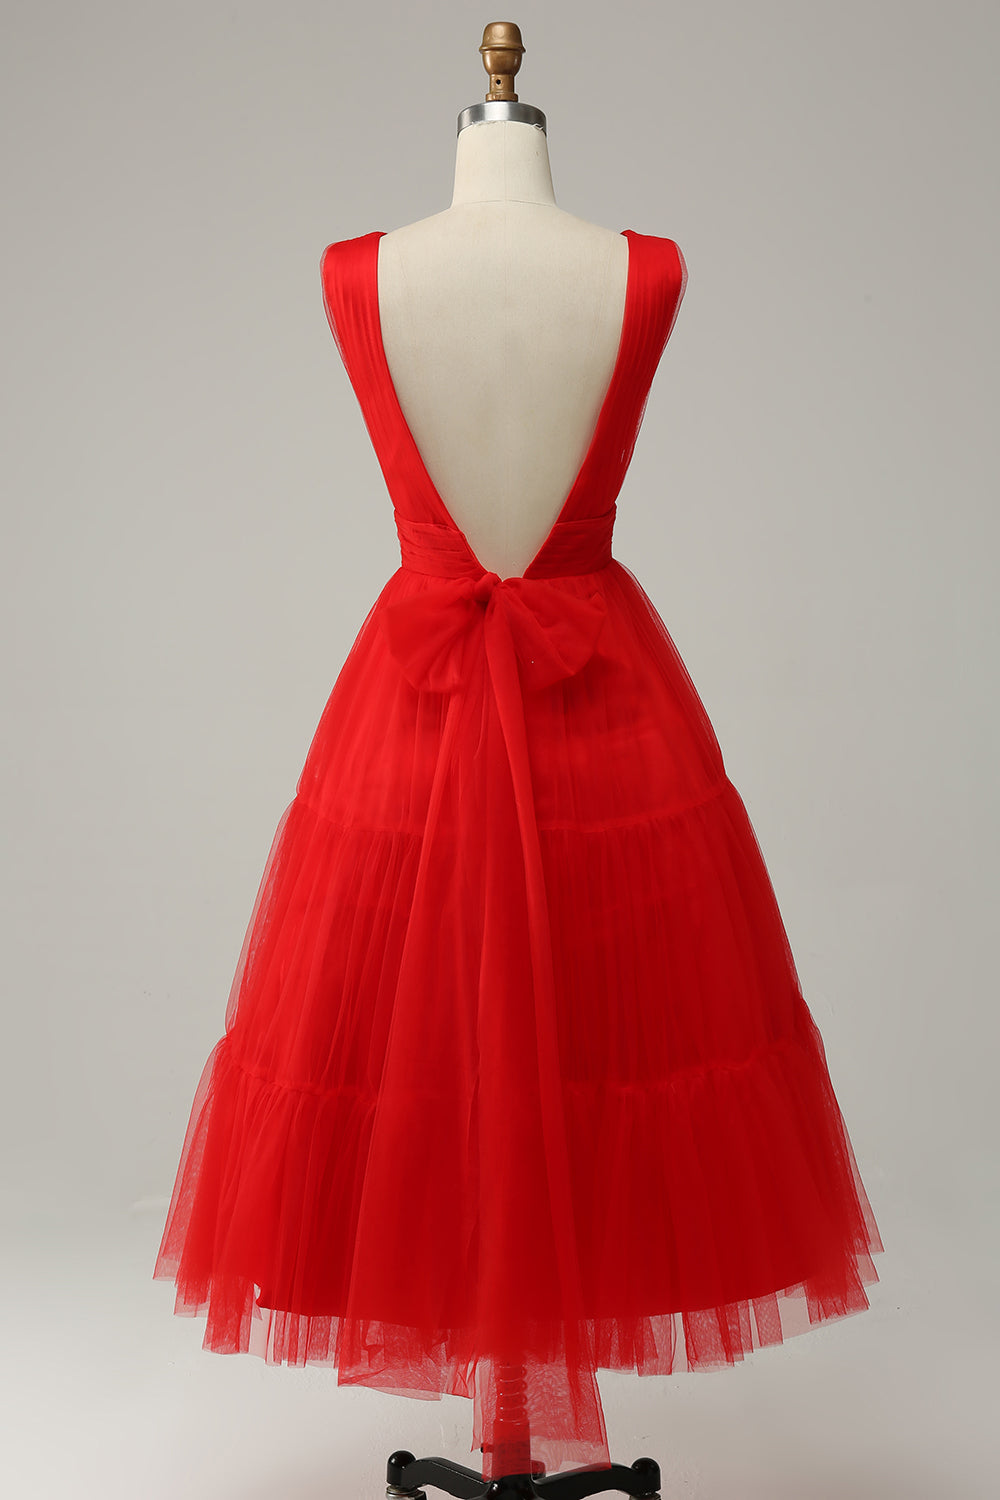 Red V-neck Tulle Tea-Length Prom Dress